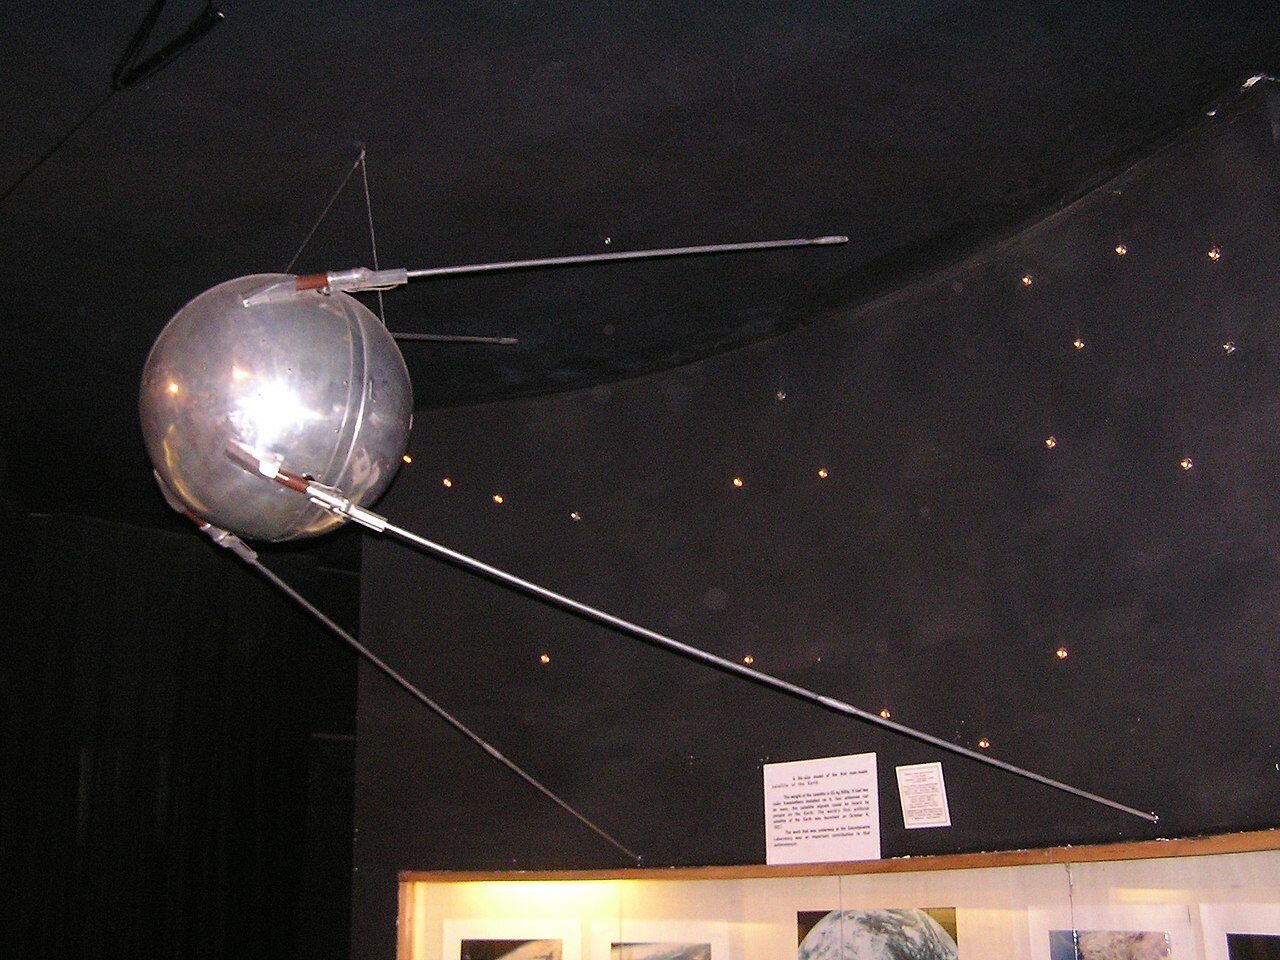 W którym roku Sowieci wystrzelili w kosmos pierwszego satelitę (Sputnik)?